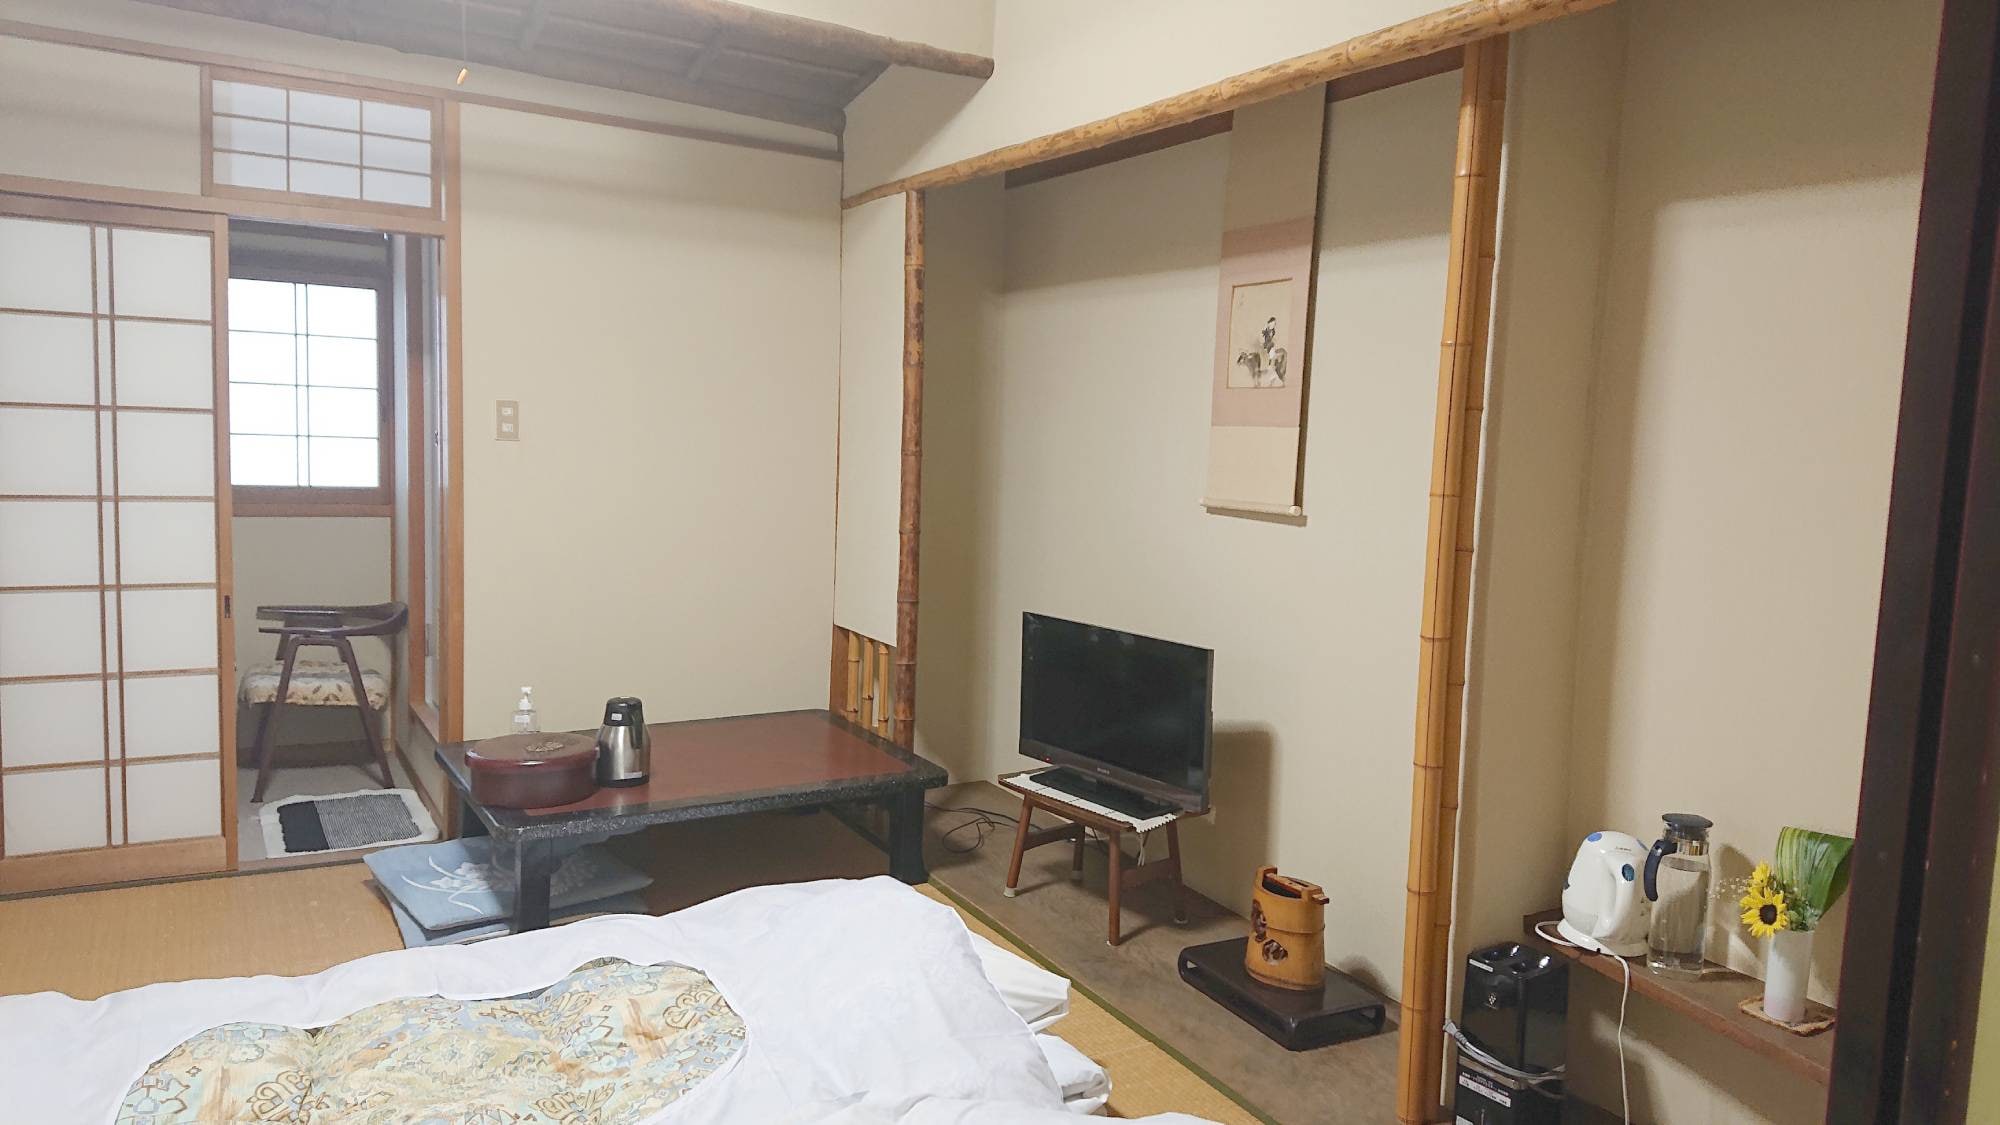 ・ ห้องพักสไตล์ญี่ปุ่นปลอดบุหรี่ 6 เสื่อทาทามิ (มีอ่างอาบน้ำและห้องส้วม)